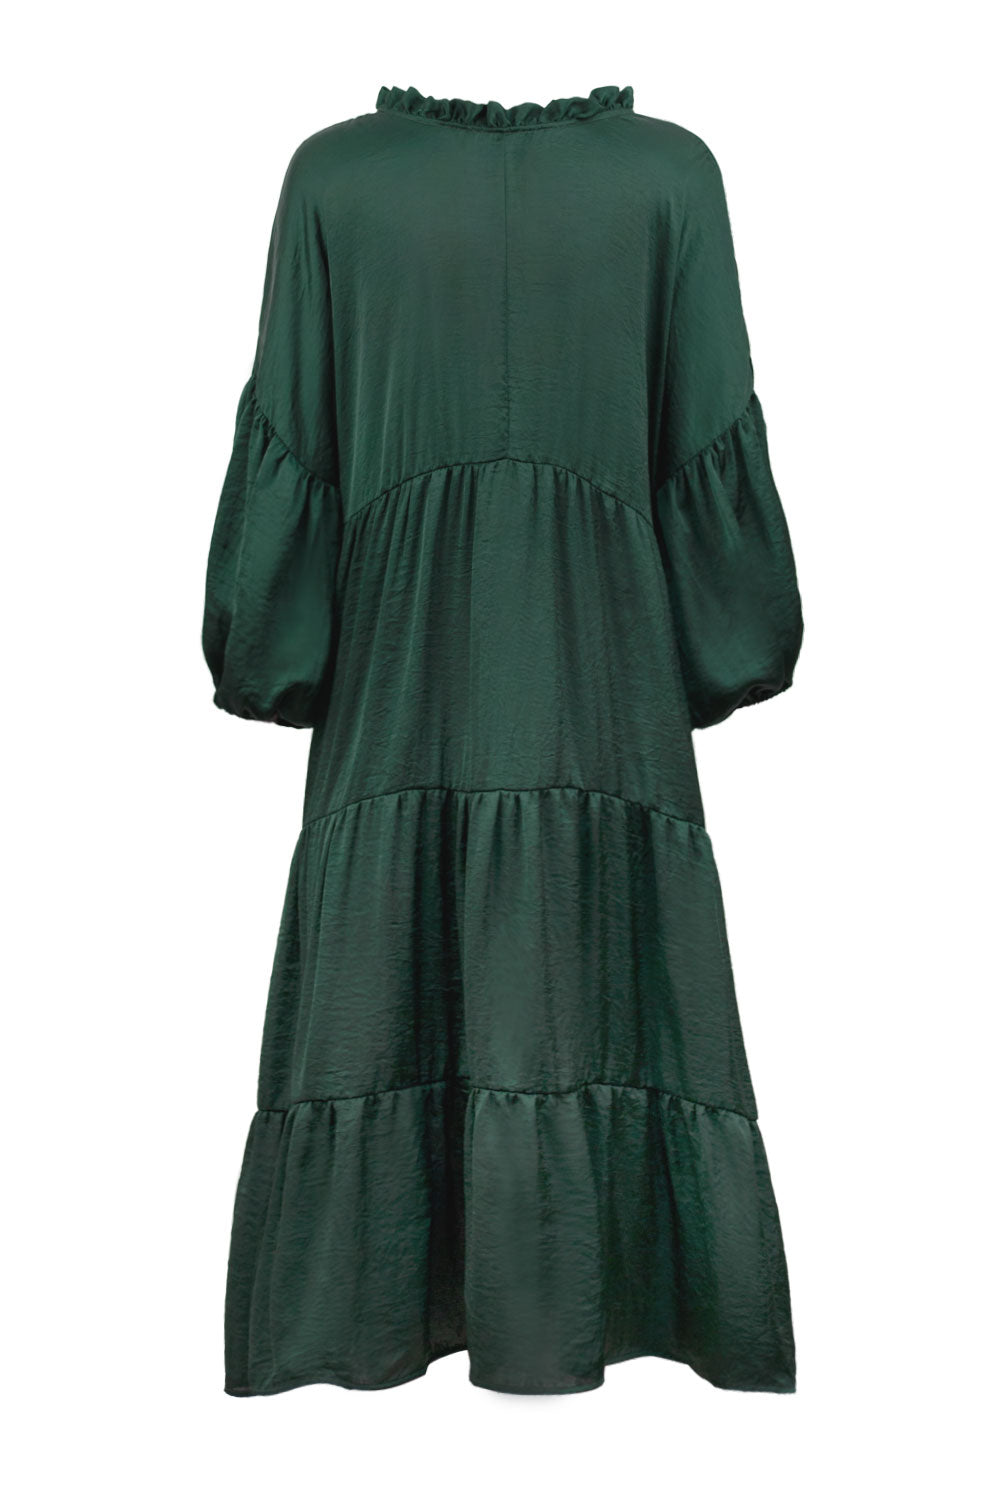 Elianna Dress Forest Green Dress